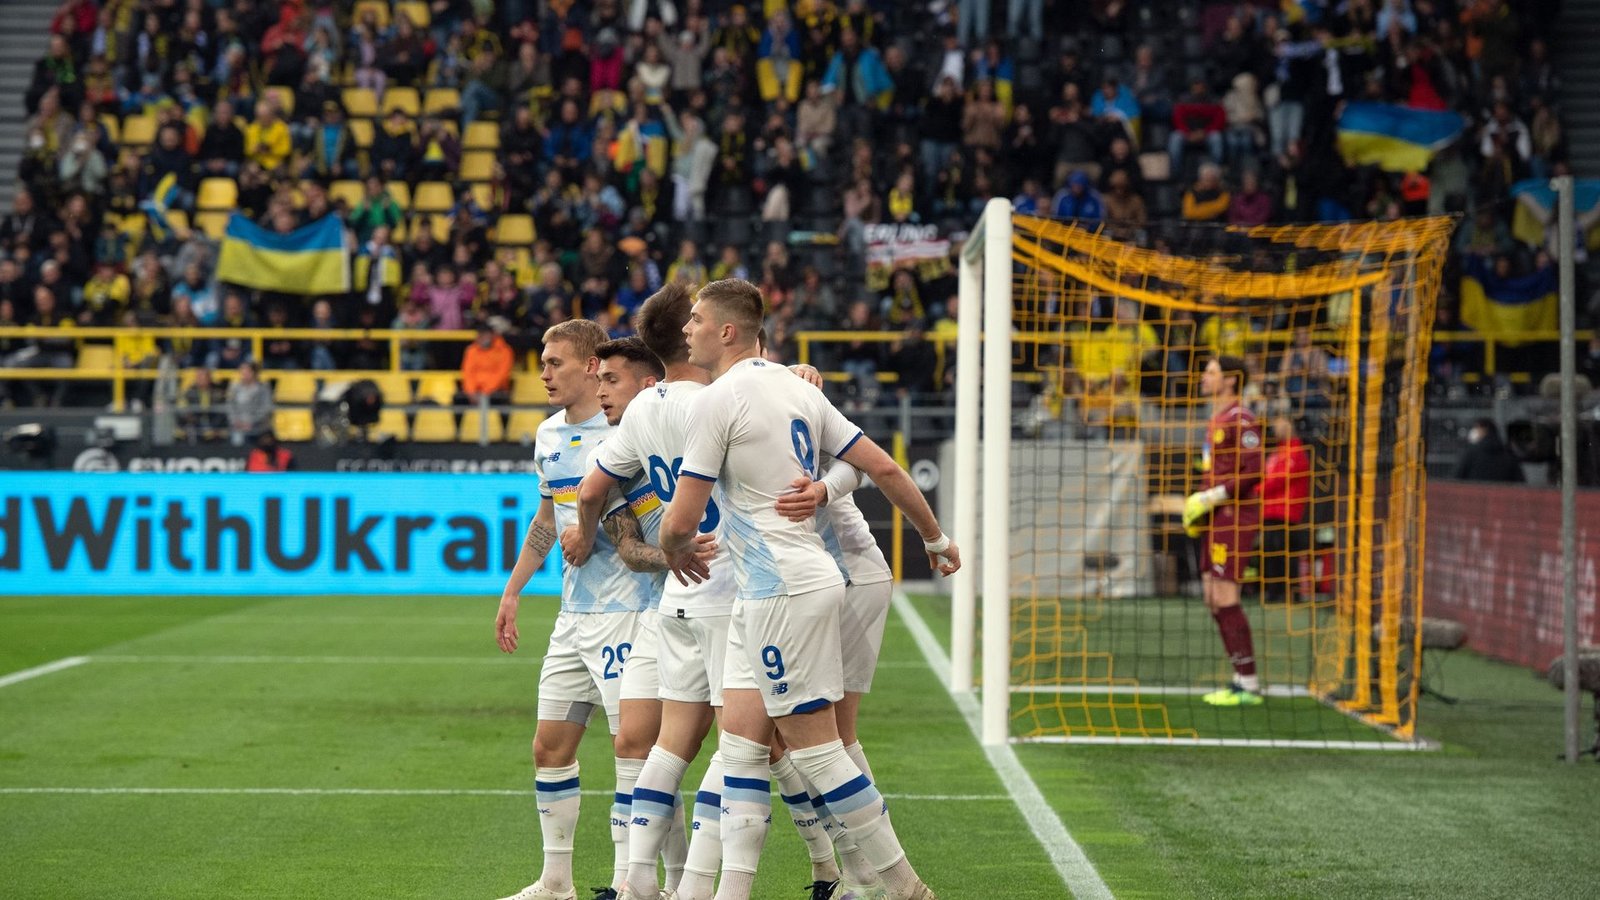 Die Spieler von Dynamo Kiew jubeln über den Treffer zur 2:1-Führung.Foto: Bernd Thissen/dpa